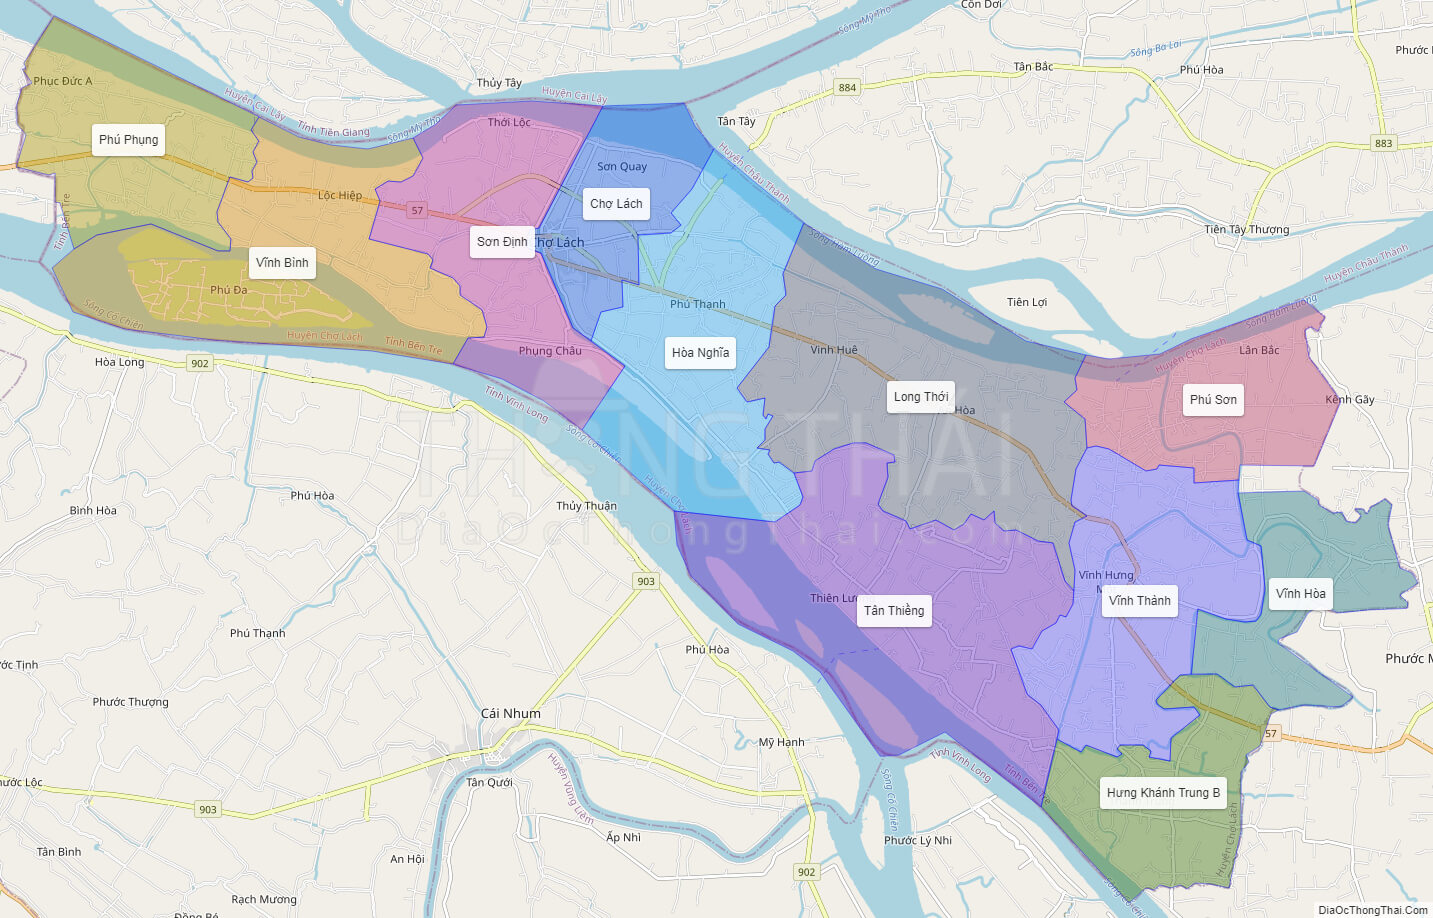 Bộ sưu tập bản đồ huyện chợ lách tỉnh bến tre đầy đủ nhất năm 2024